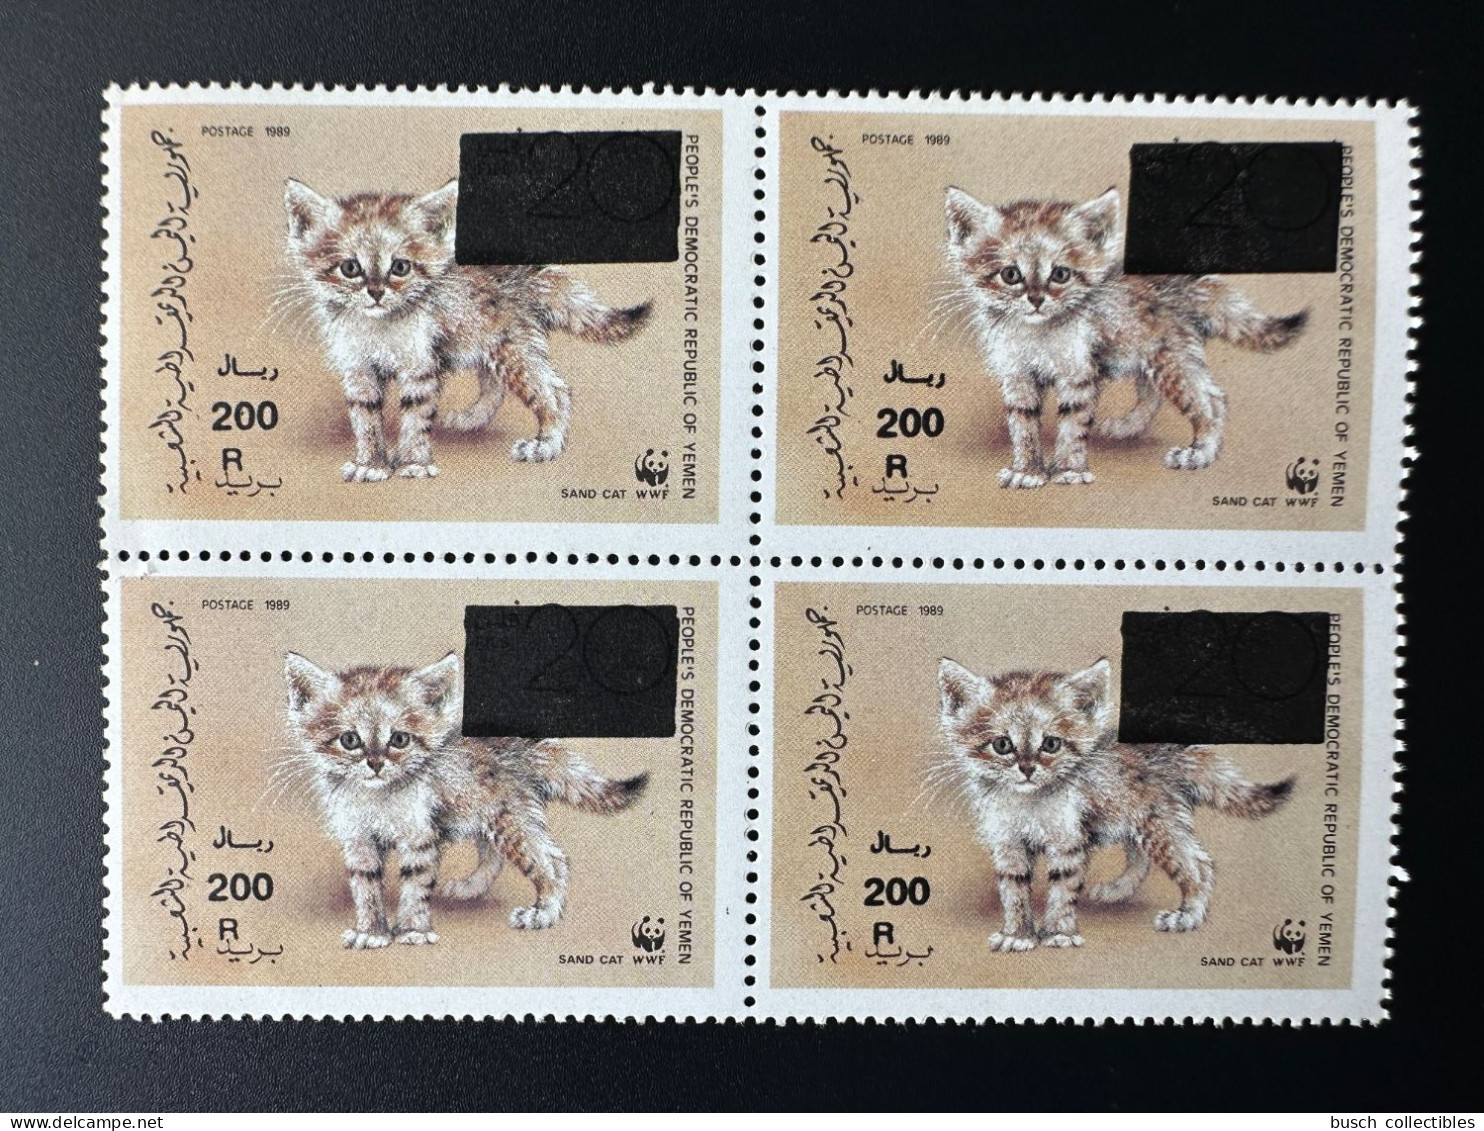 Yemen Jemen 1989 / 1993 Mi. 125 Block Of 4 WWF W.W.F. Faune Fauna Overprint Surchargé Sand Cat Chat Des Sables Sandkatze - Unused Stamps